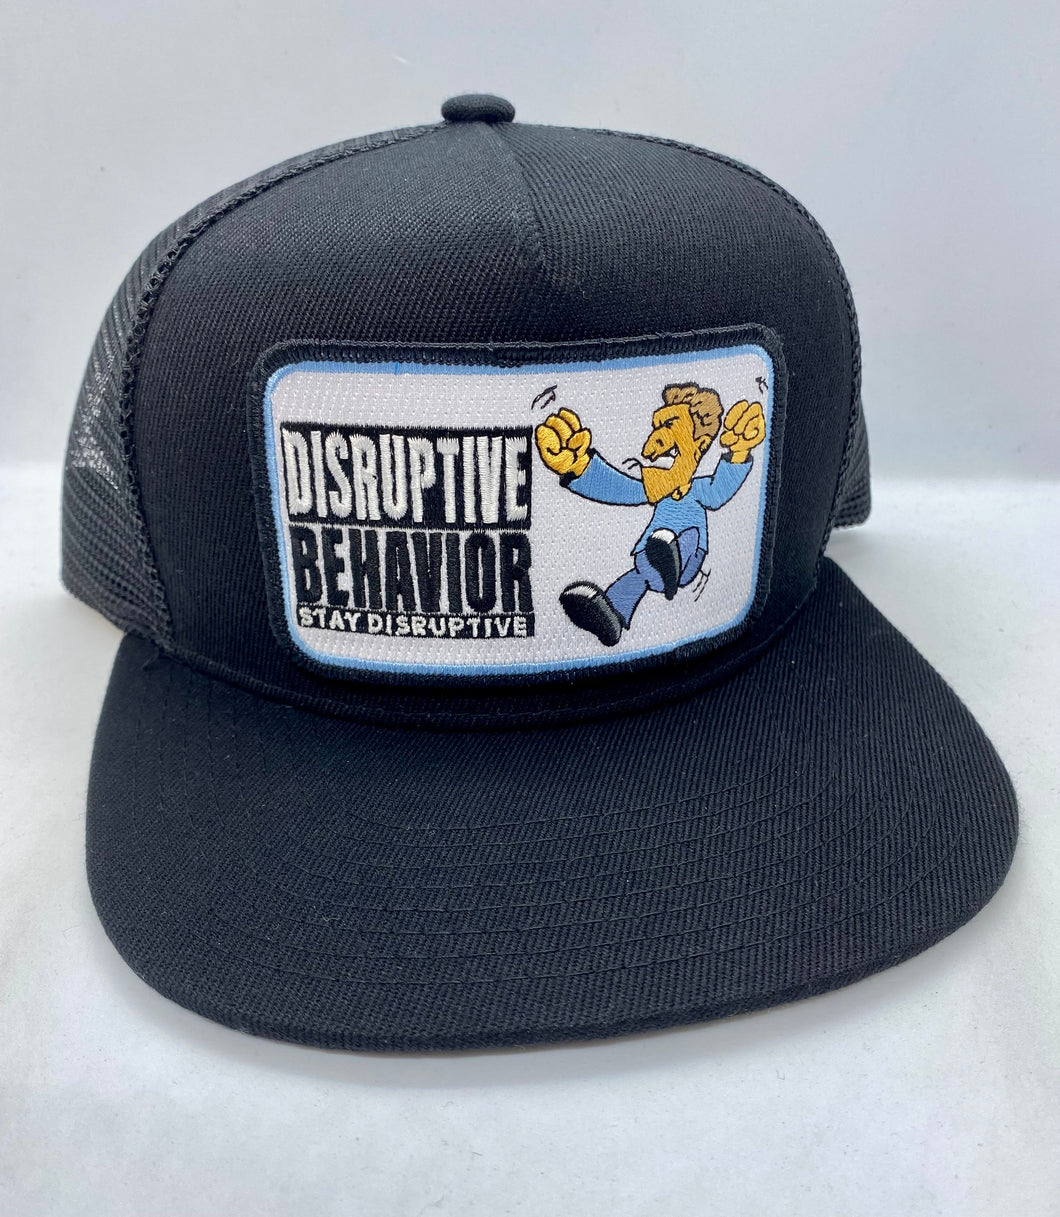 I Am Rapaport: Disruptive Behavior Pocket Hat